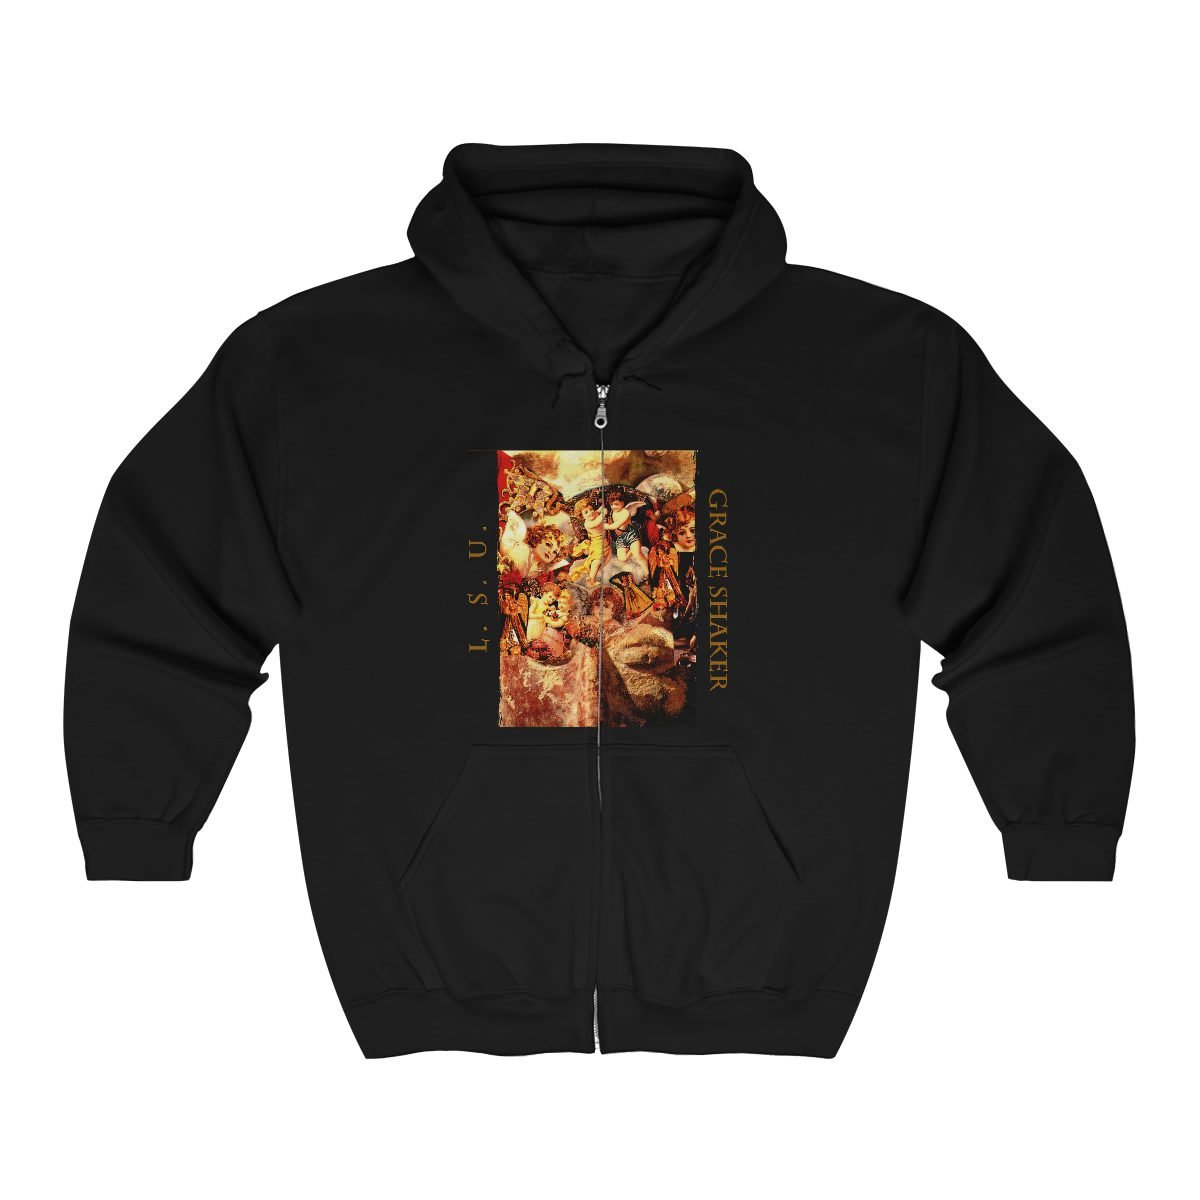 L.S.U. – Grace Shaker Full Zip Hooded Sweatshirt 186MD